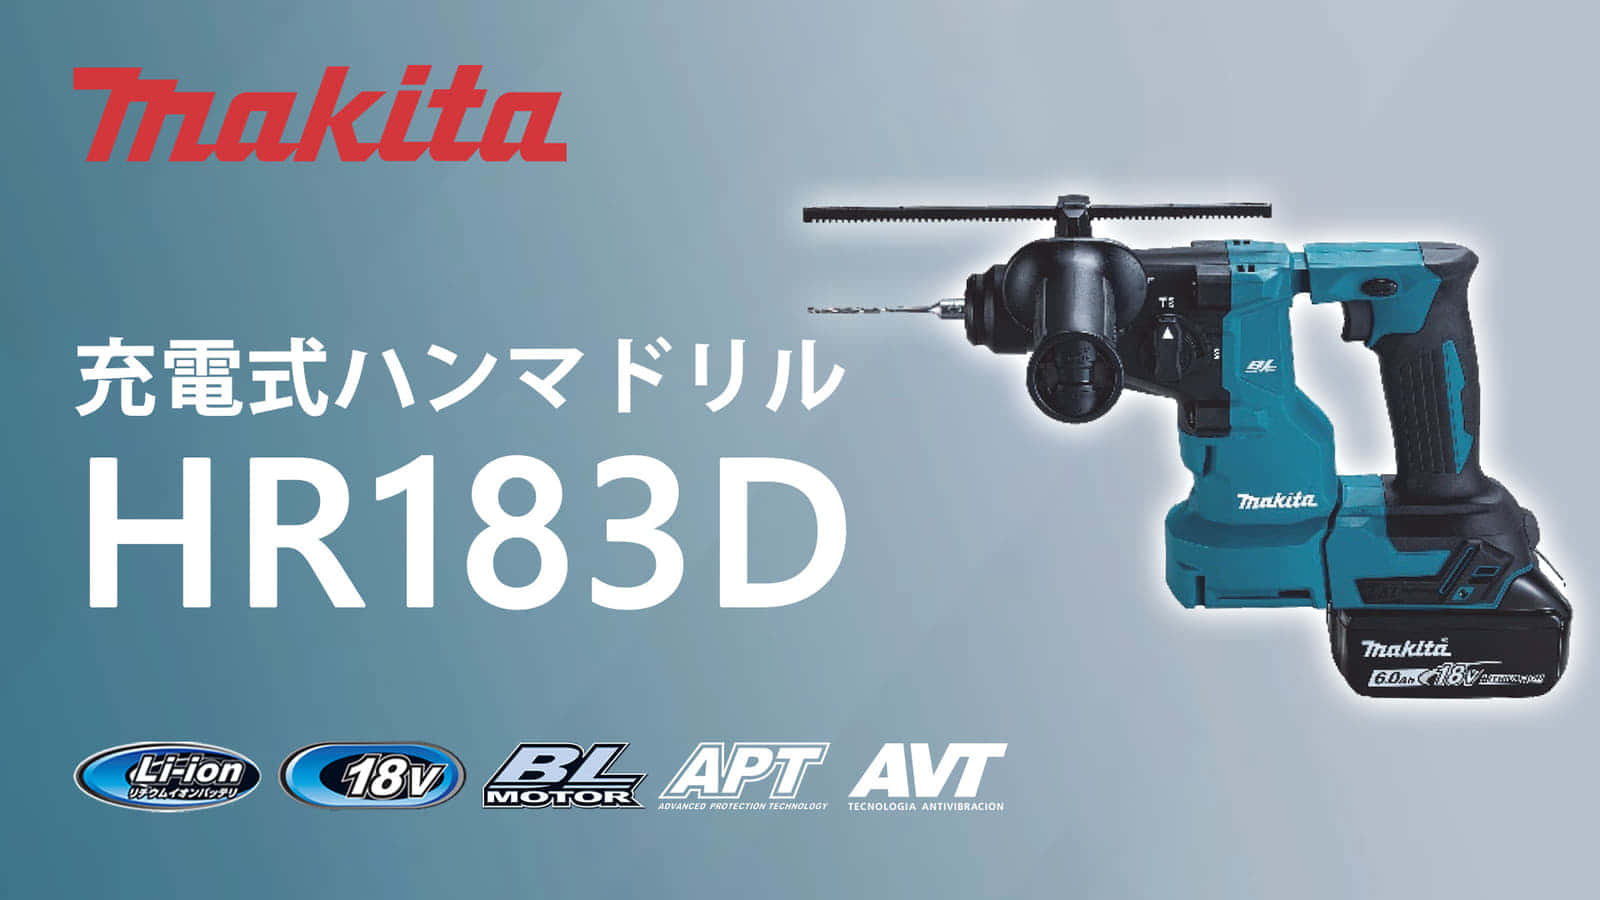 マキタ HR183D 充電式ハンマドリルを発売、18Vワンハンドクラスの小型モデル